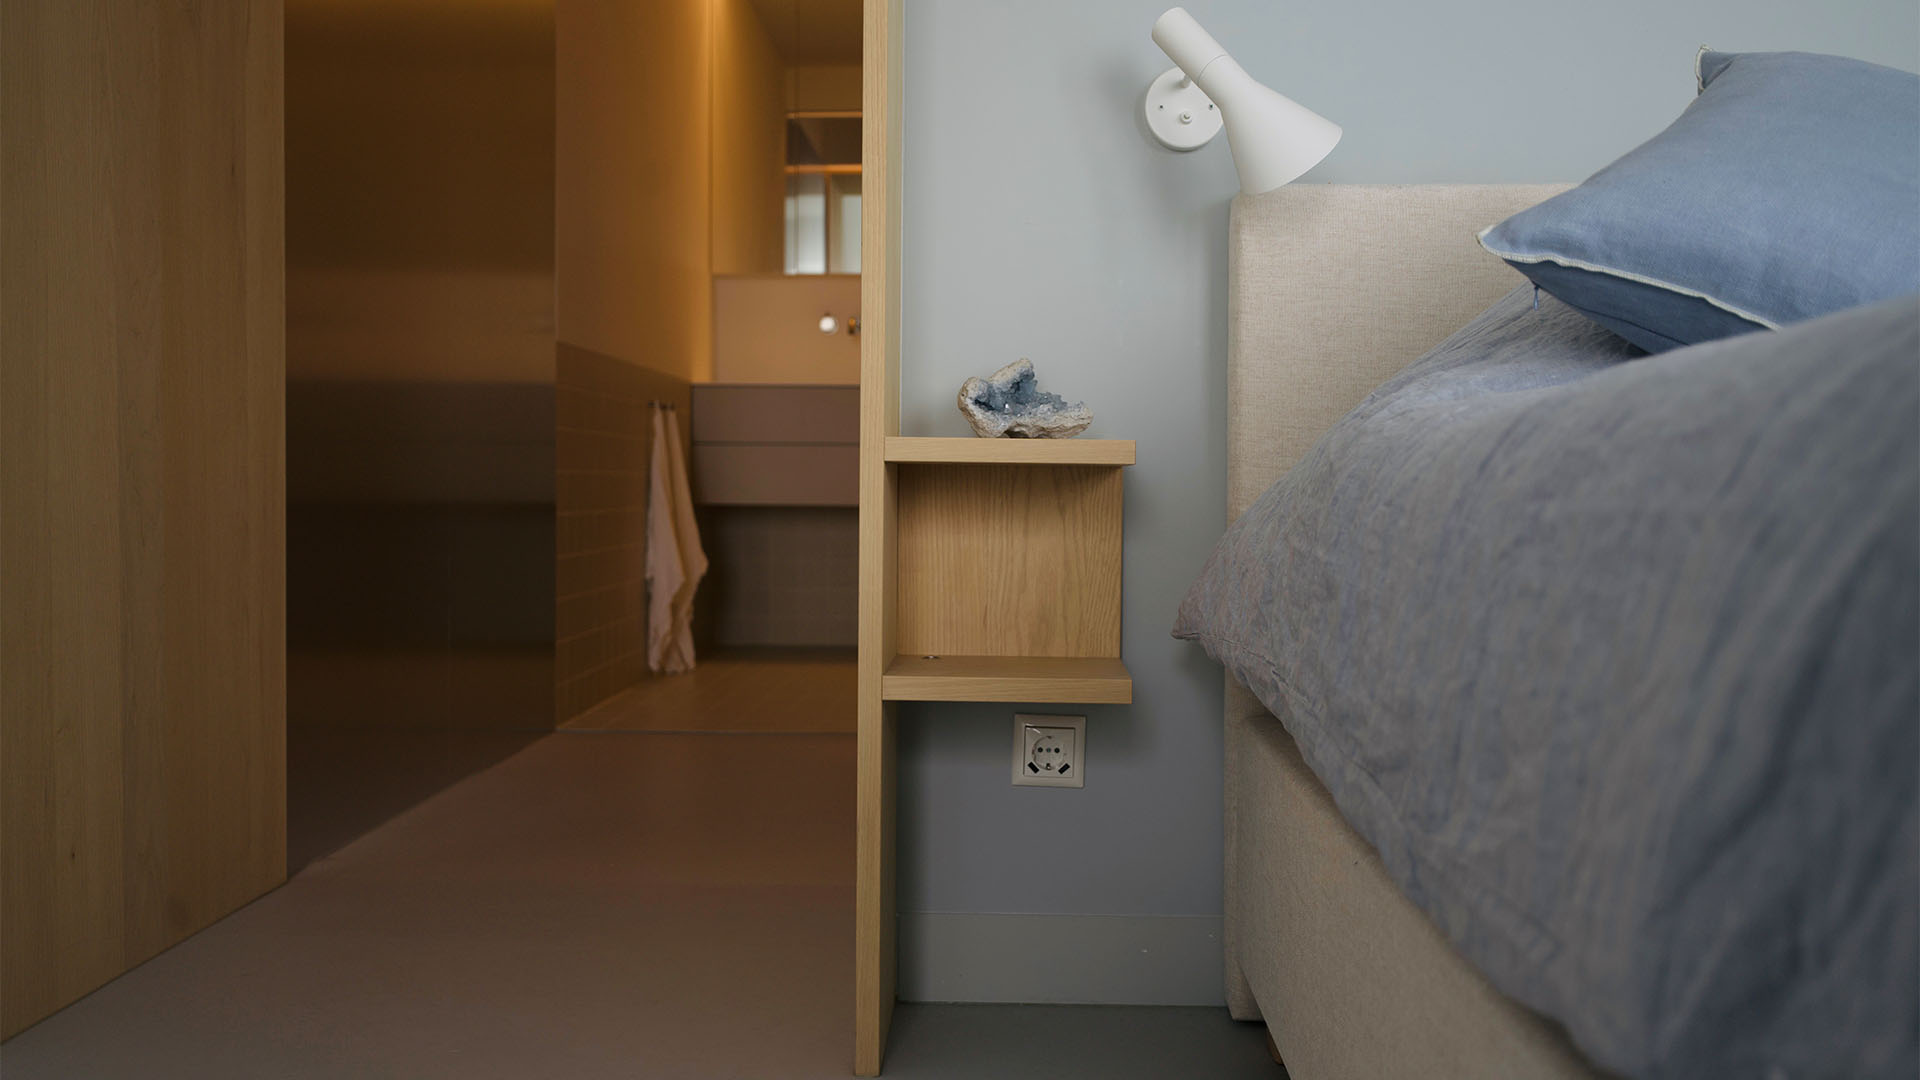 Maaskant meubel- en interieurbouw - projecten - wonen - Zalmhaventoren - Rotterdam - appartement - slaapkamer